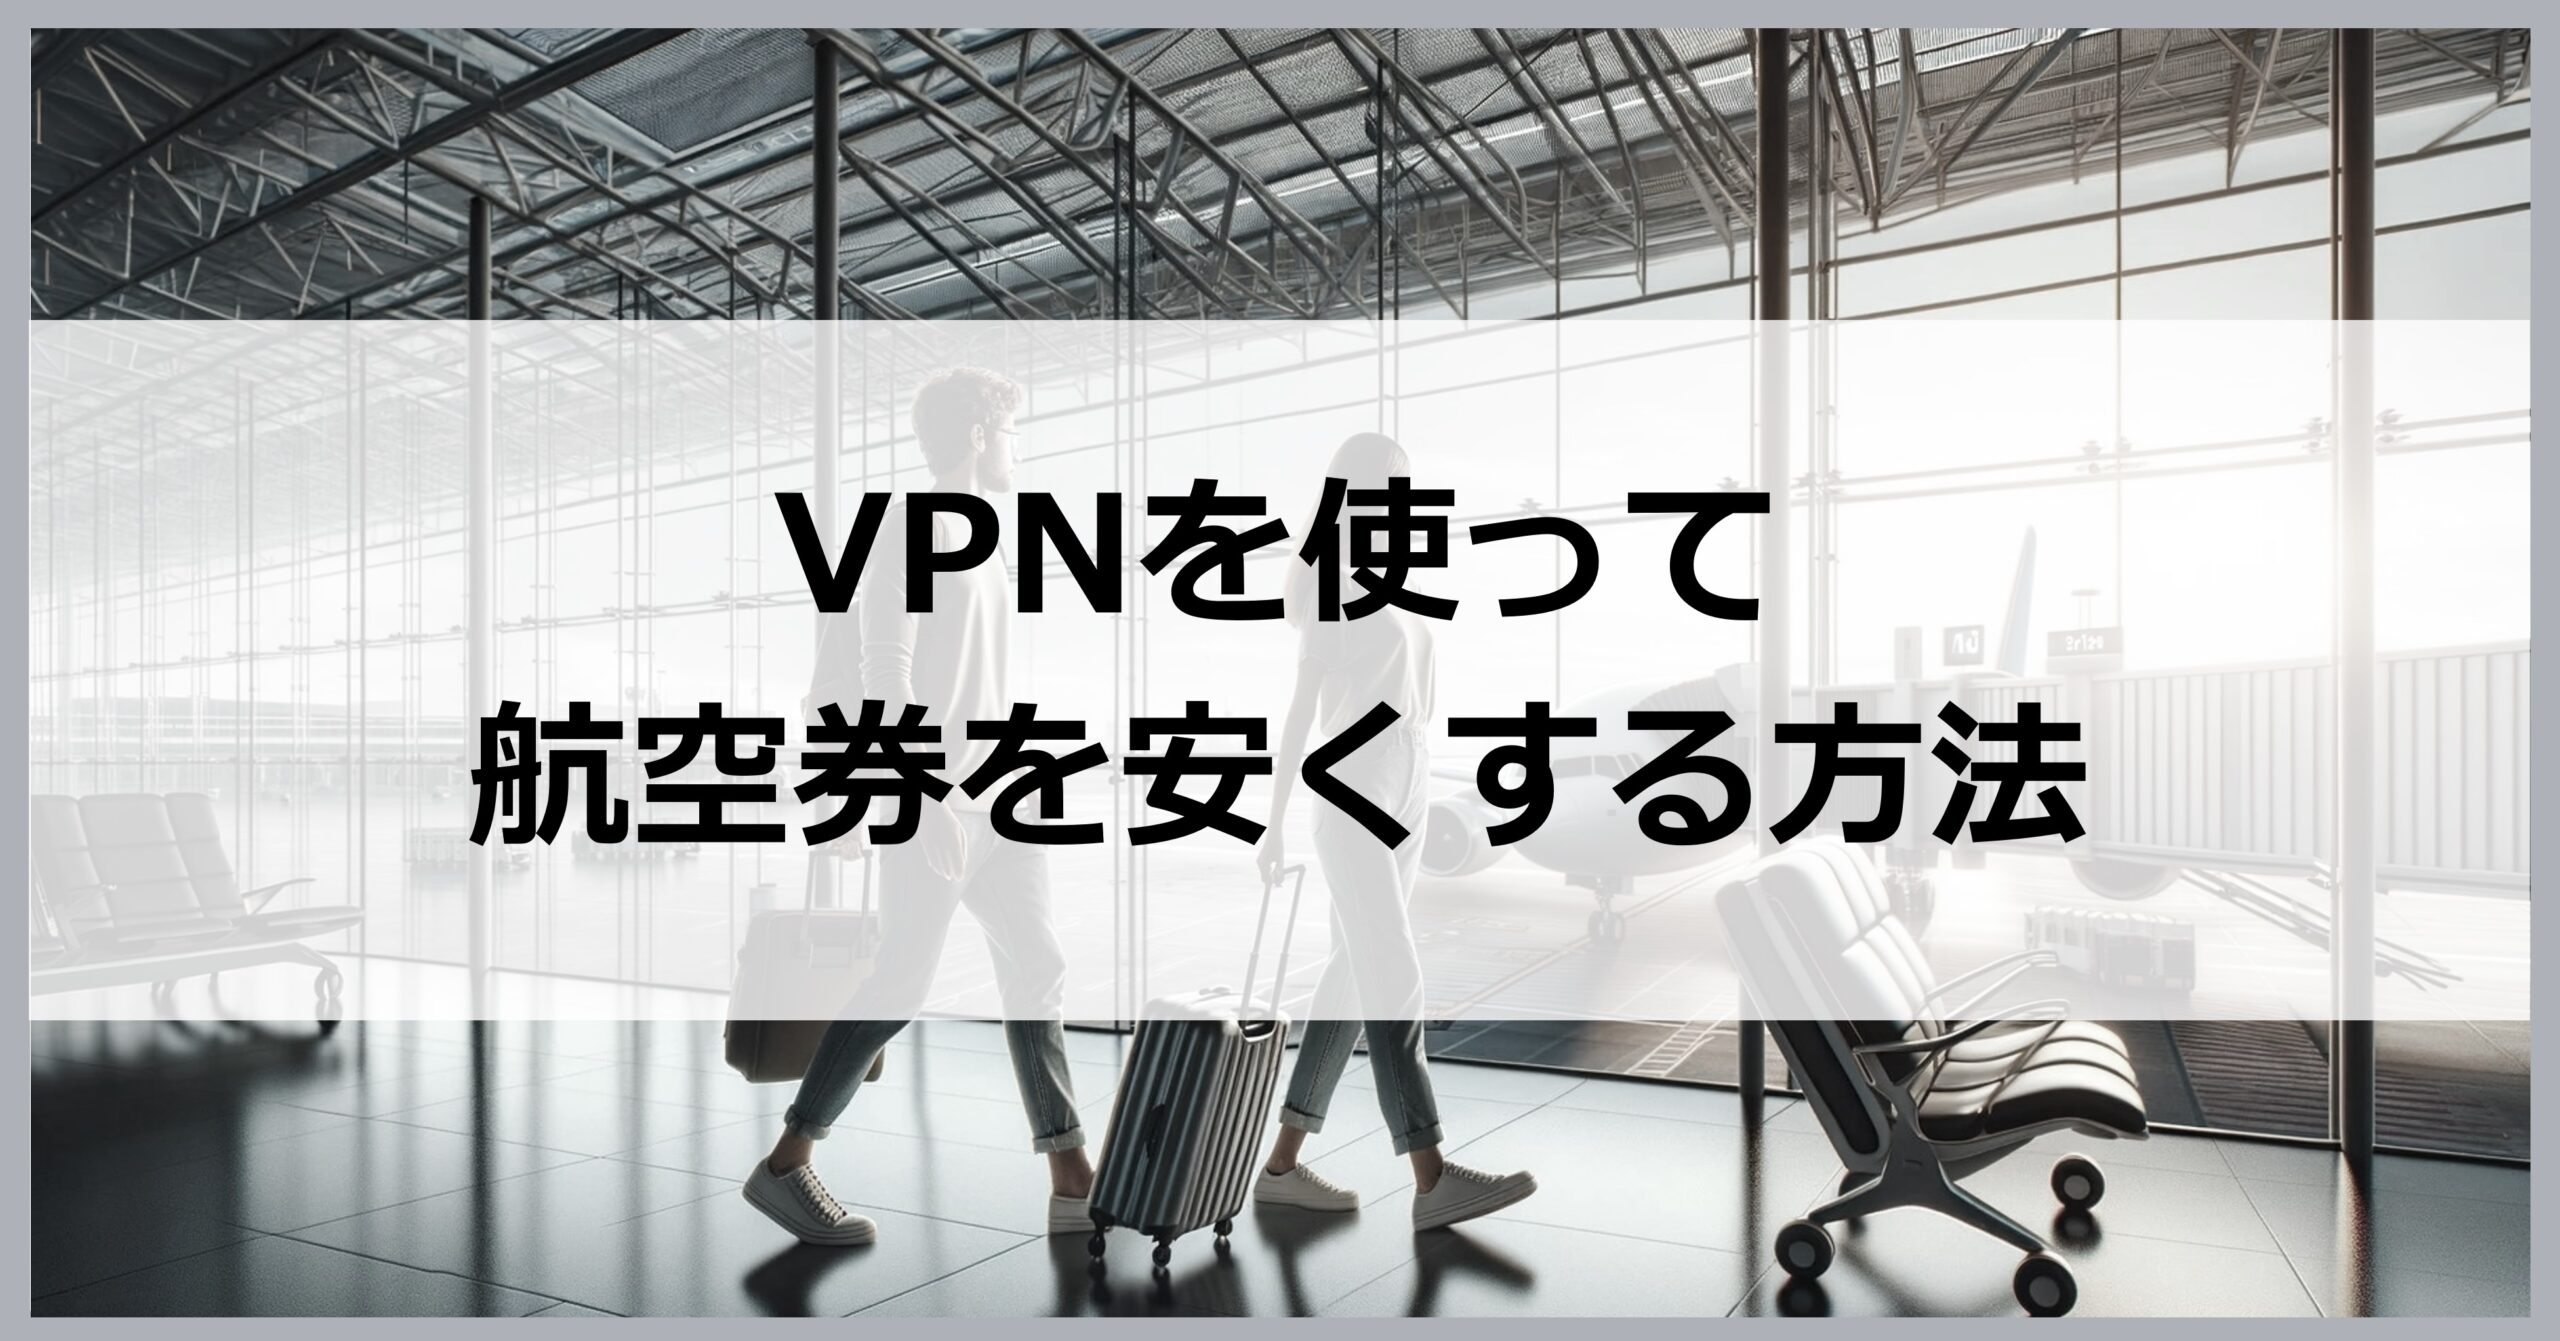 VPNを使って航空券を安くする方法